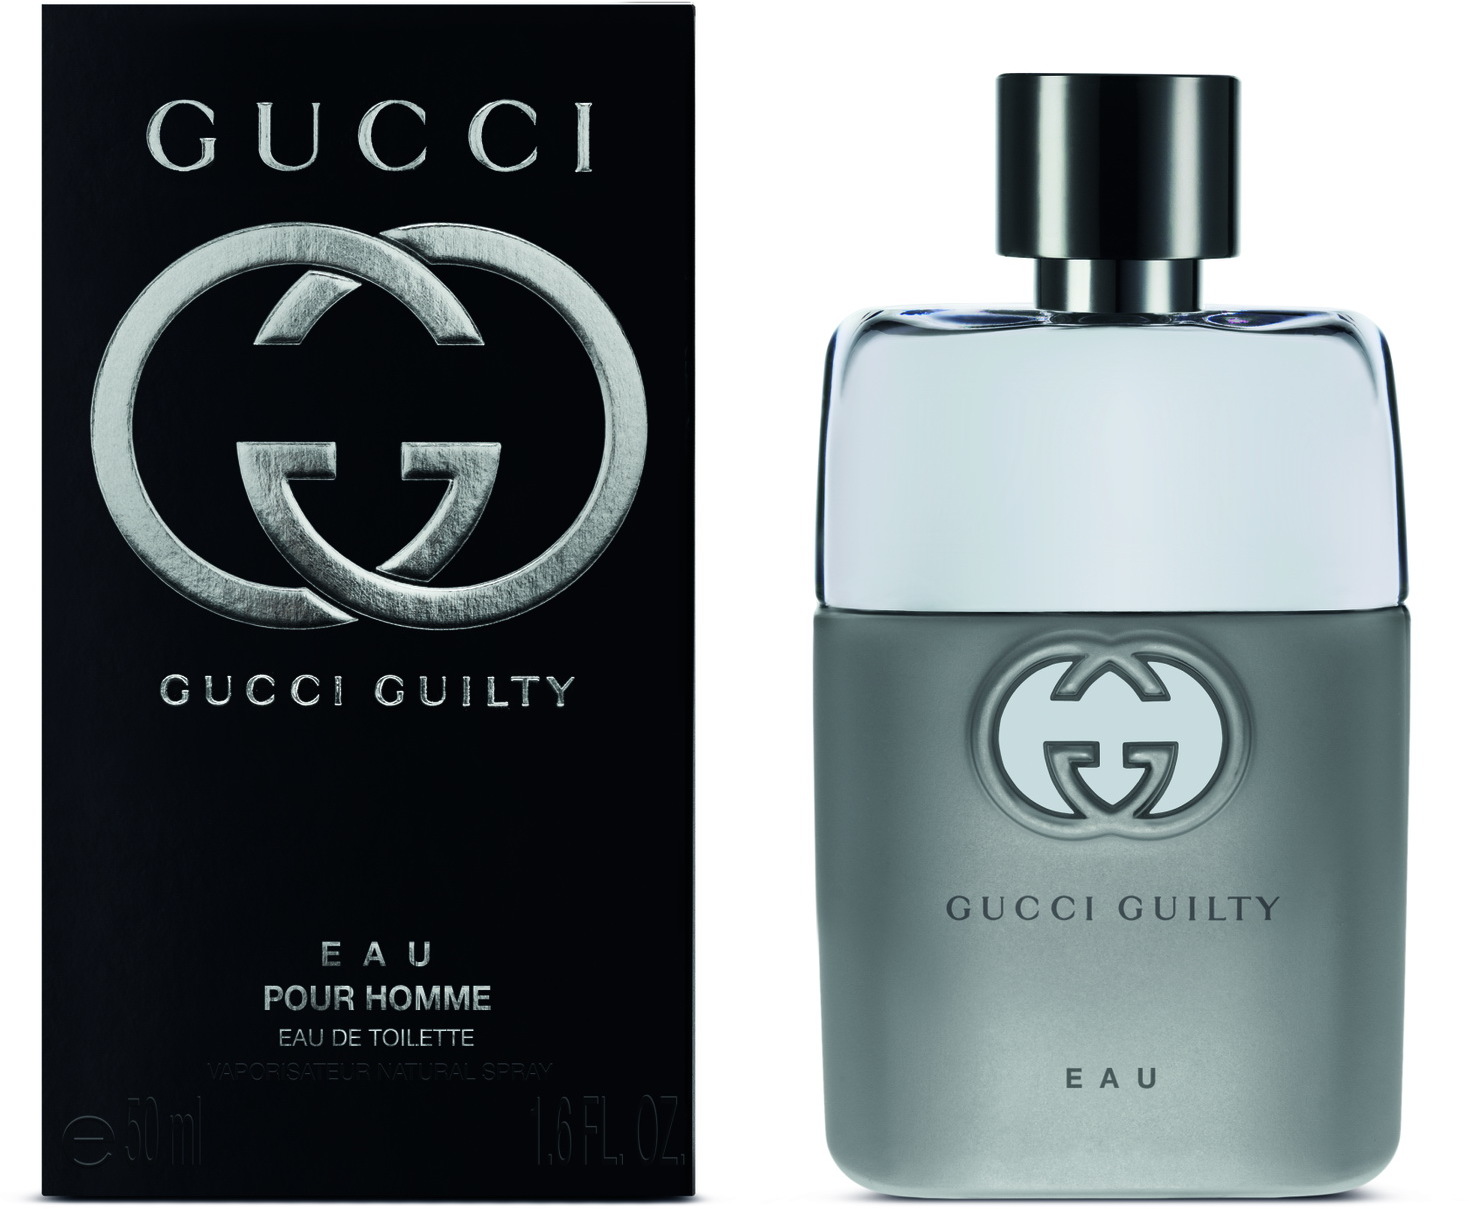 Gucci Guilty Eau Pour Homme EdT 50ml in 